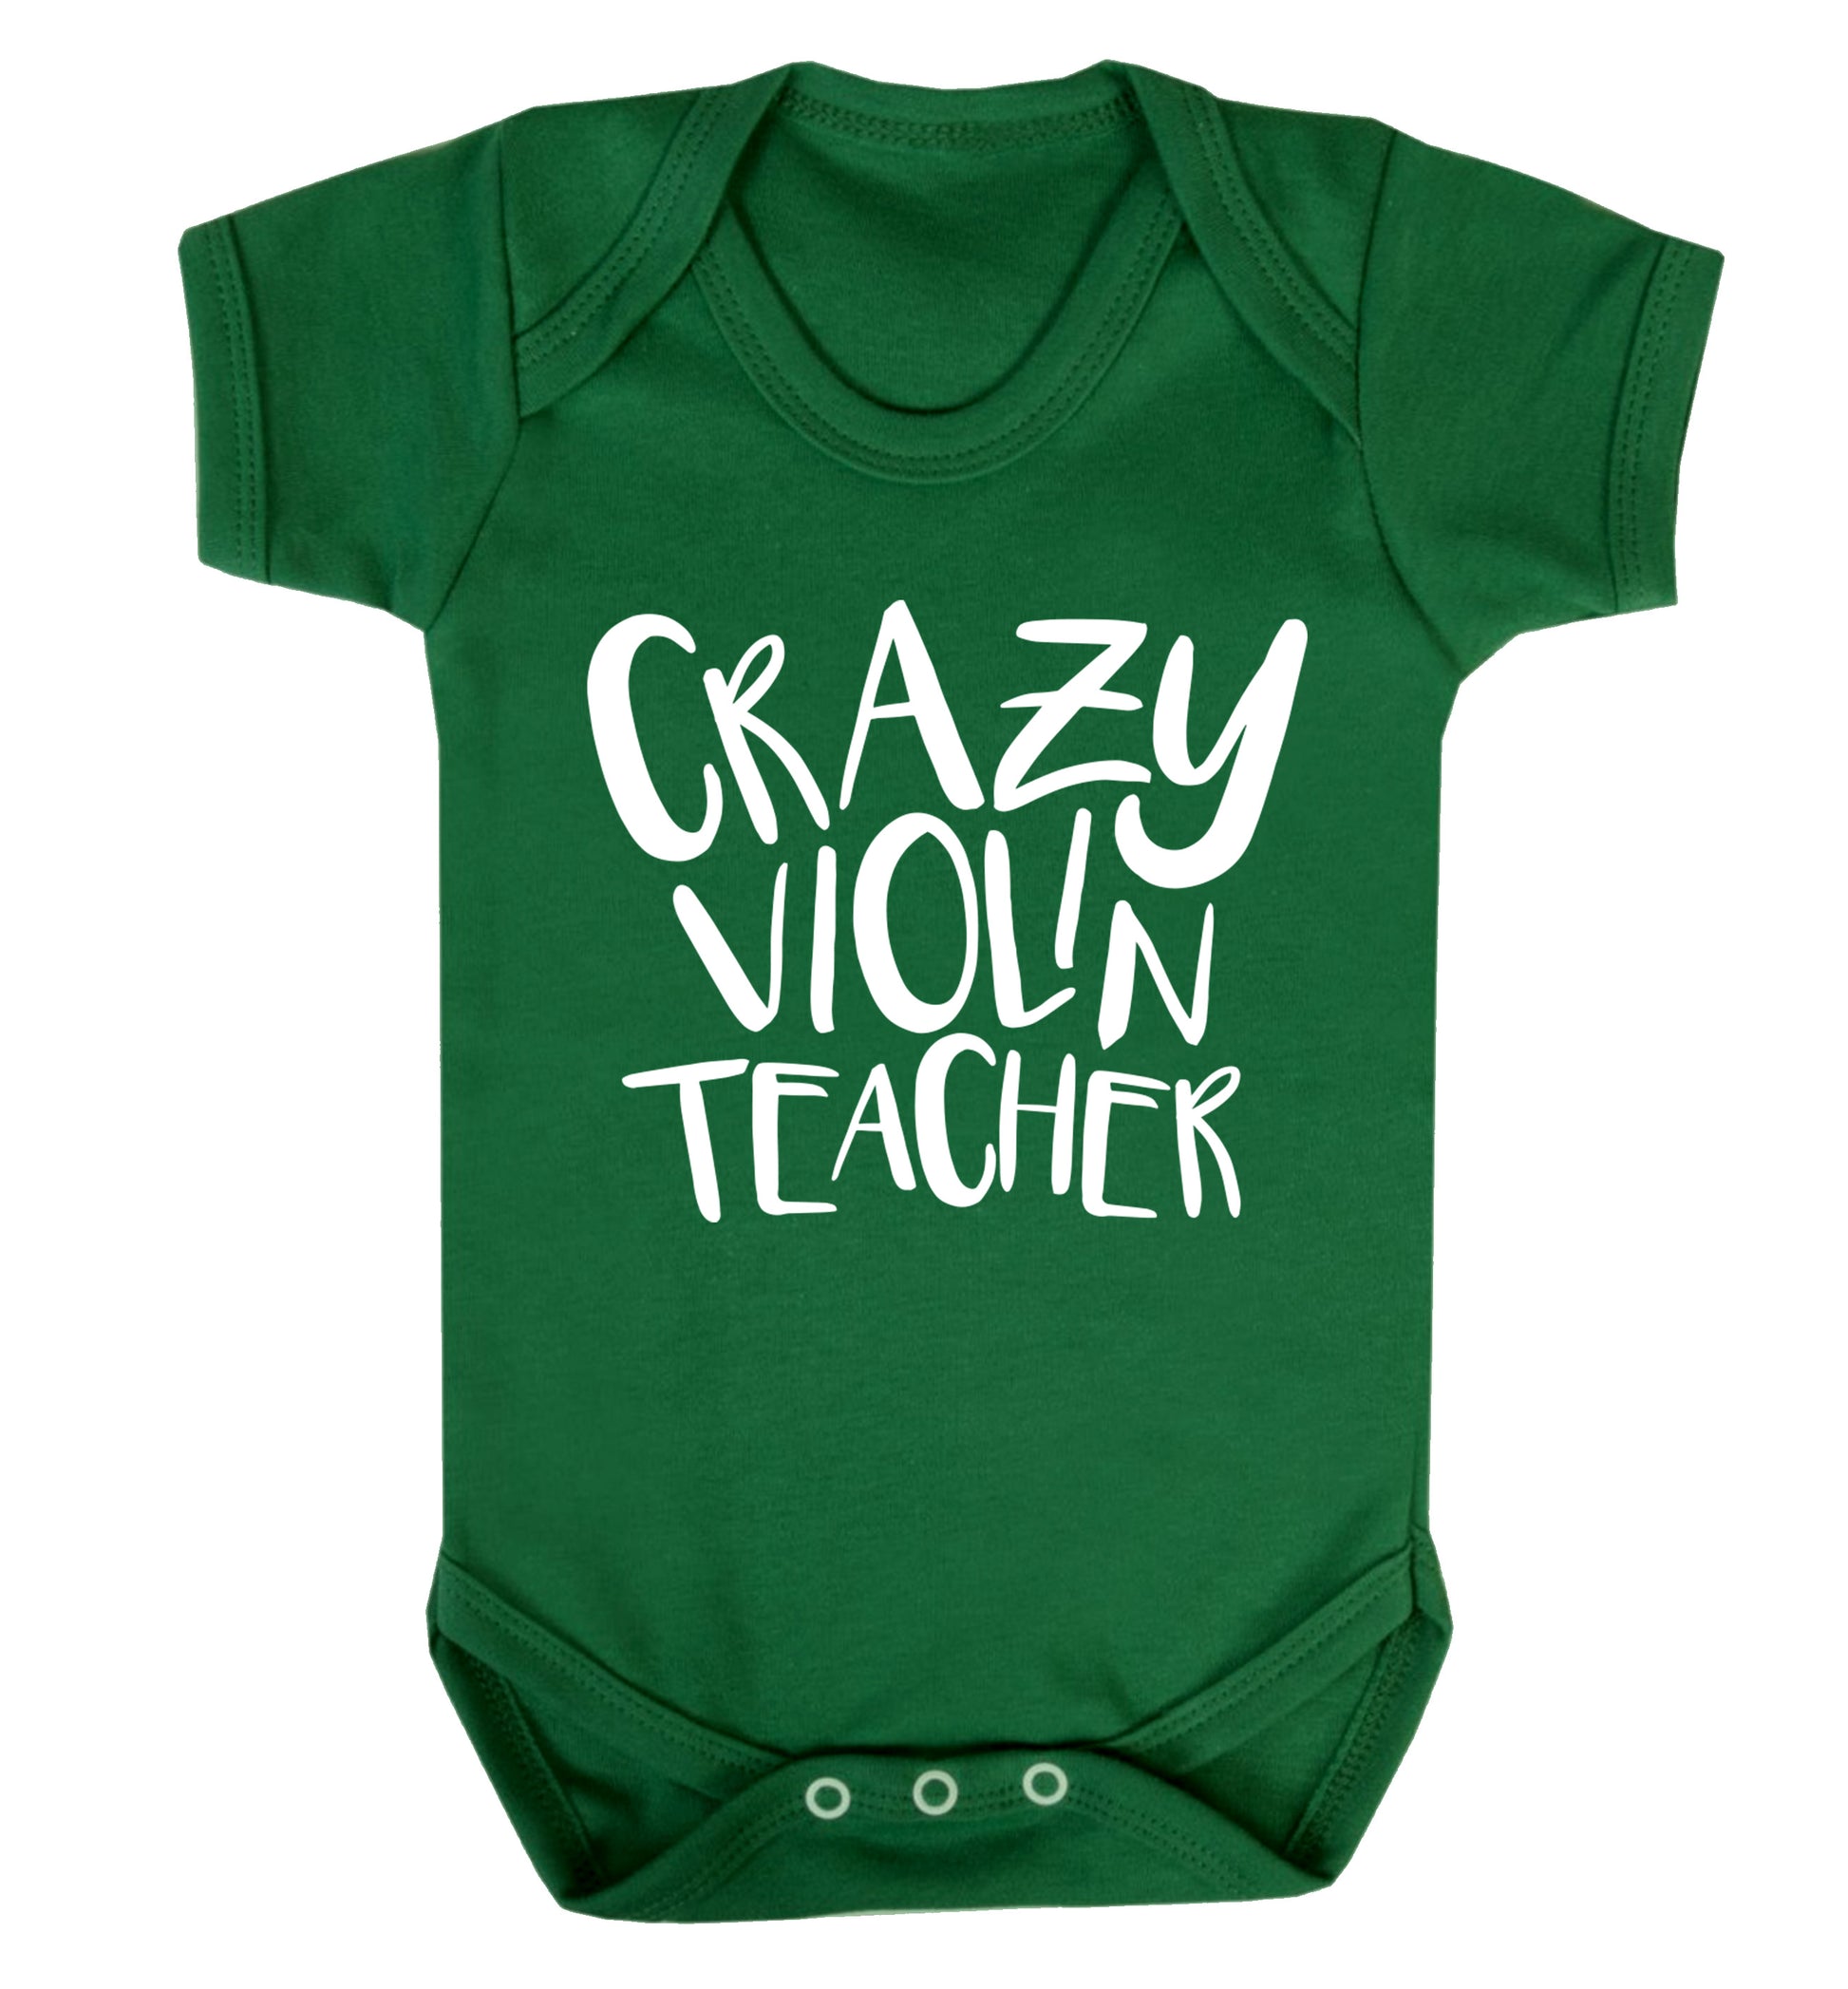 Crazy violin teacher Baby Vest green 18-24 months